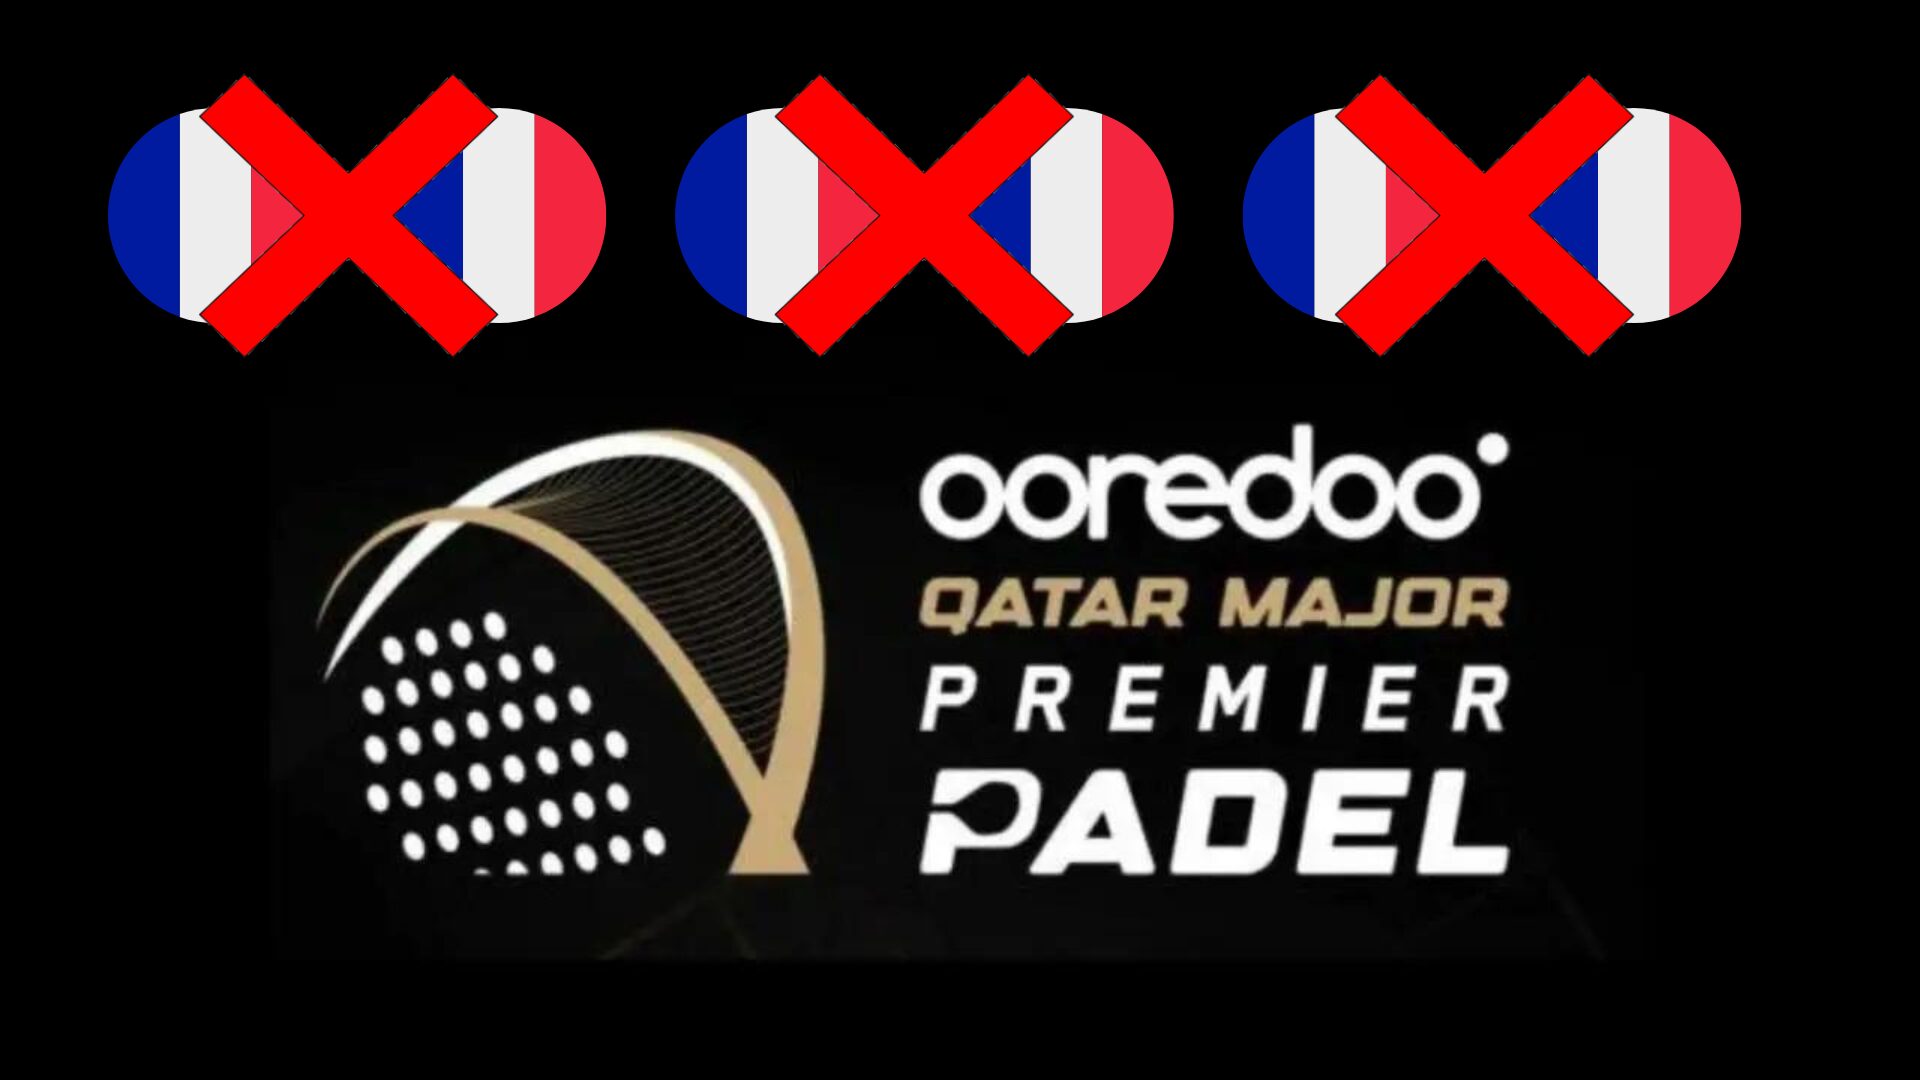 Premier Padel Qatar Major kolme Ranskan tappiot previas